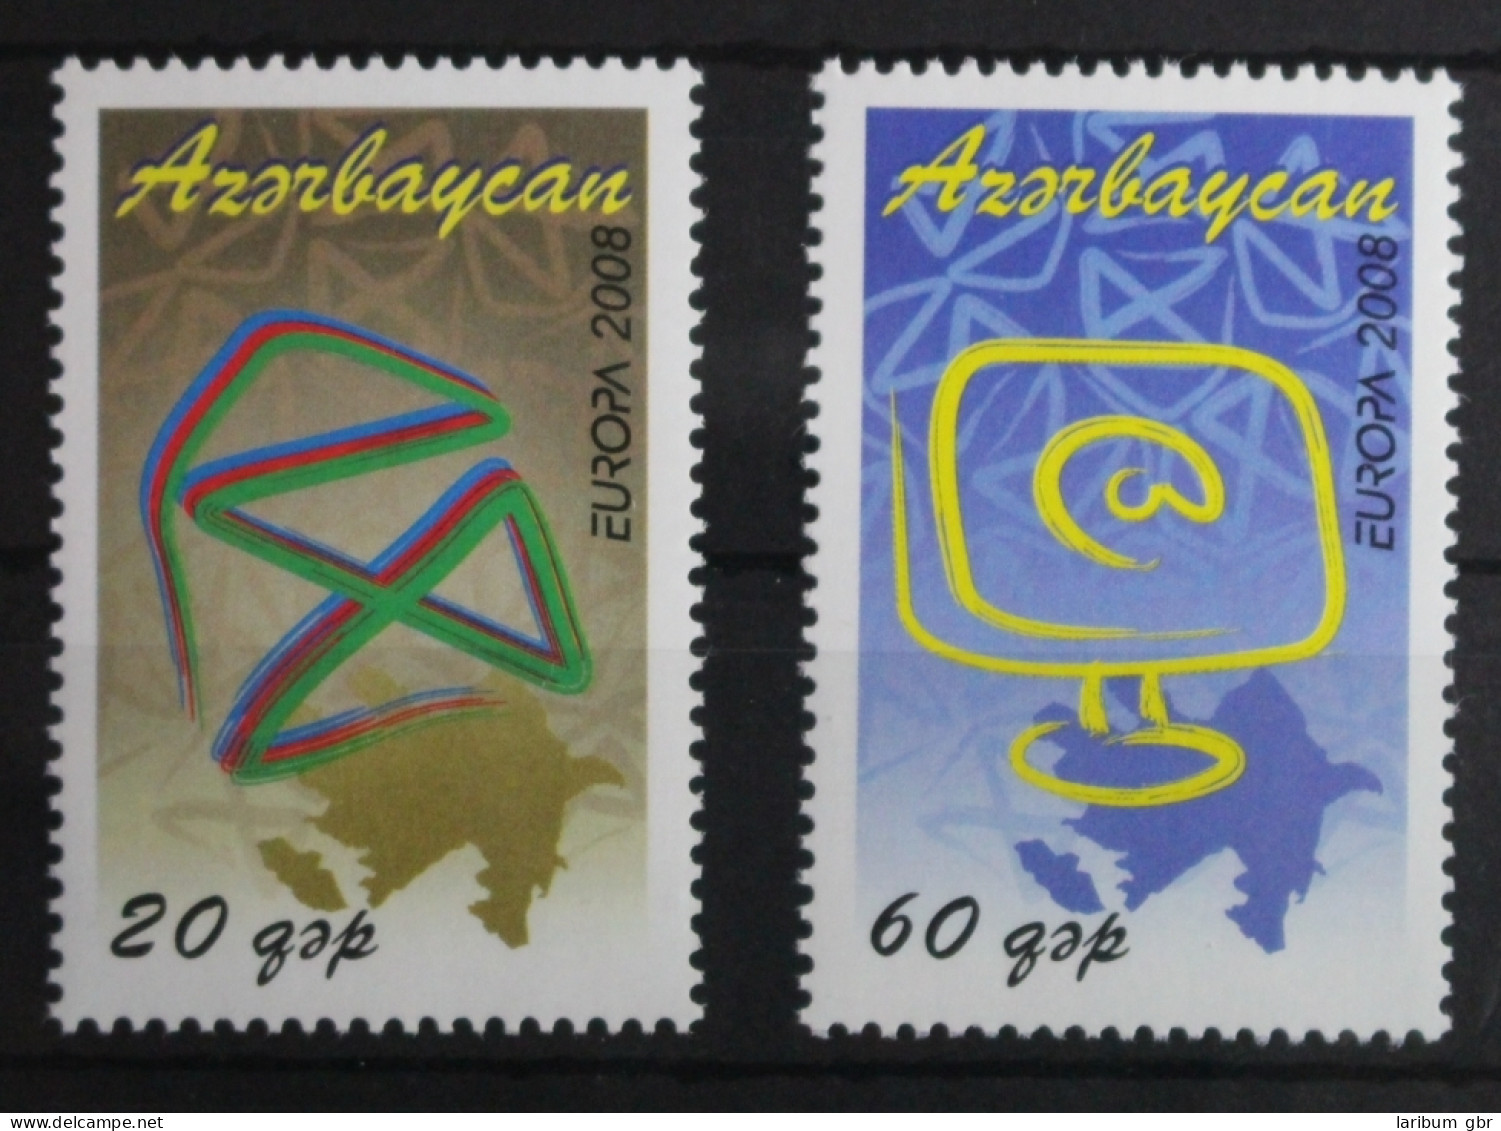 Aserbaidschan 715-716 Postfrisch Europa Der Brief #VQ895 - Aserbaidschan